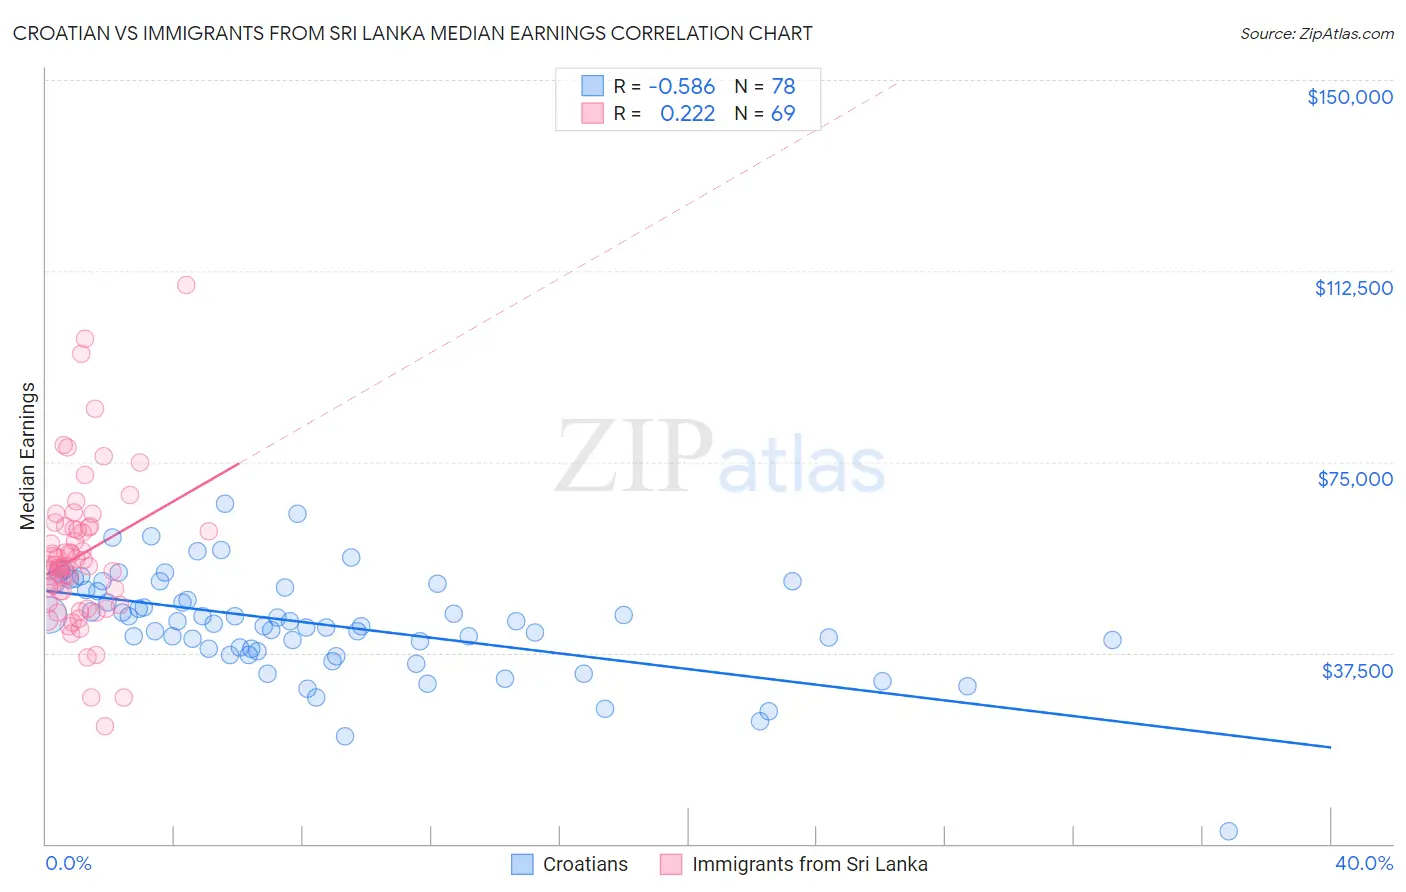 Croatian vs Immigrants from Sri Lanka Median Earnings